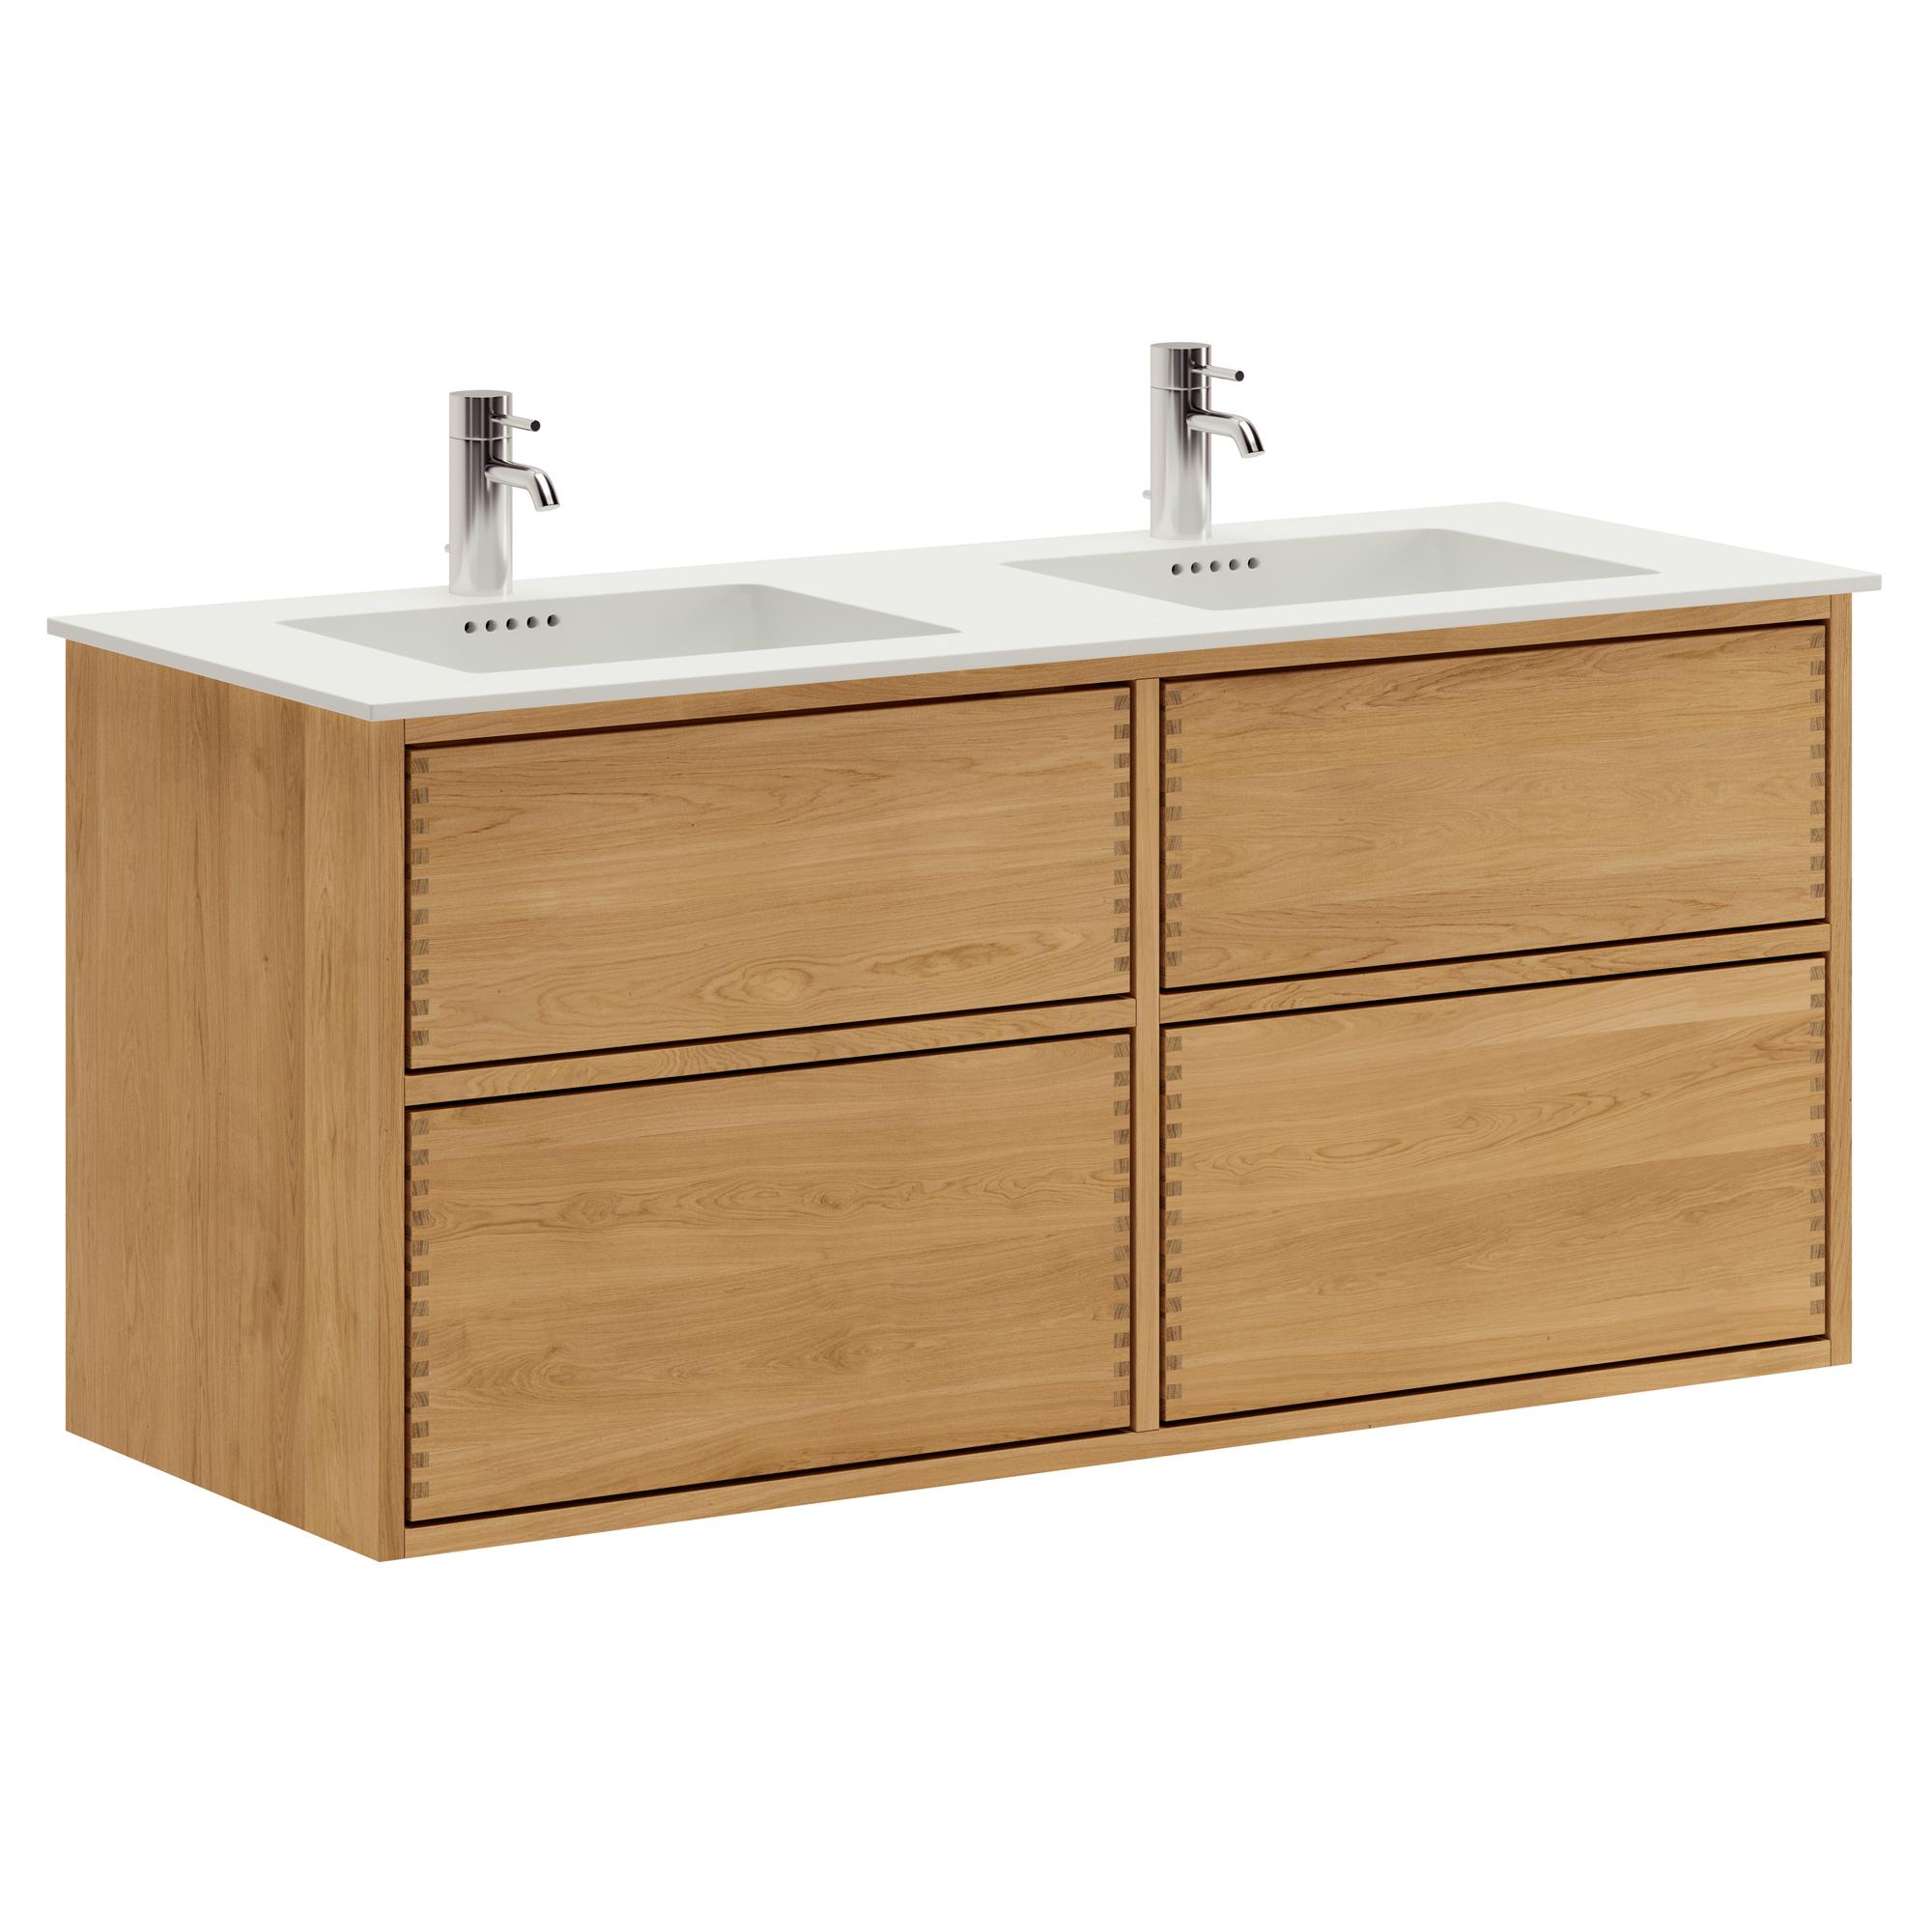 120 cm Just Wood Push Badezimmermöbel mit 4 Schubladen und Solid Surface-Waschbecken - Doppelwaschbecken